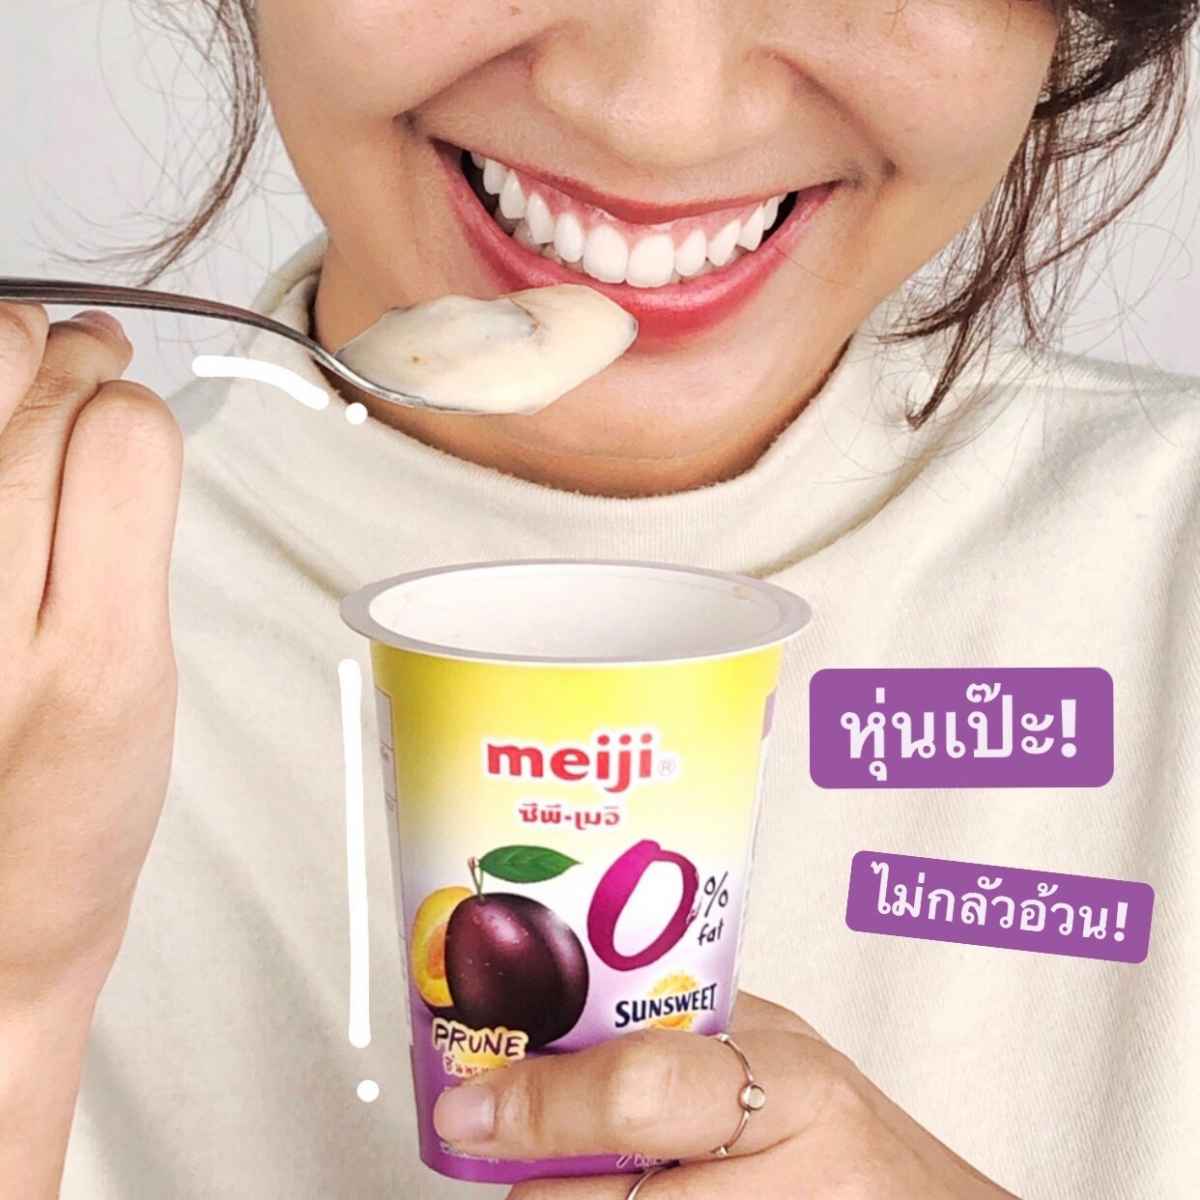 meiji yogurt